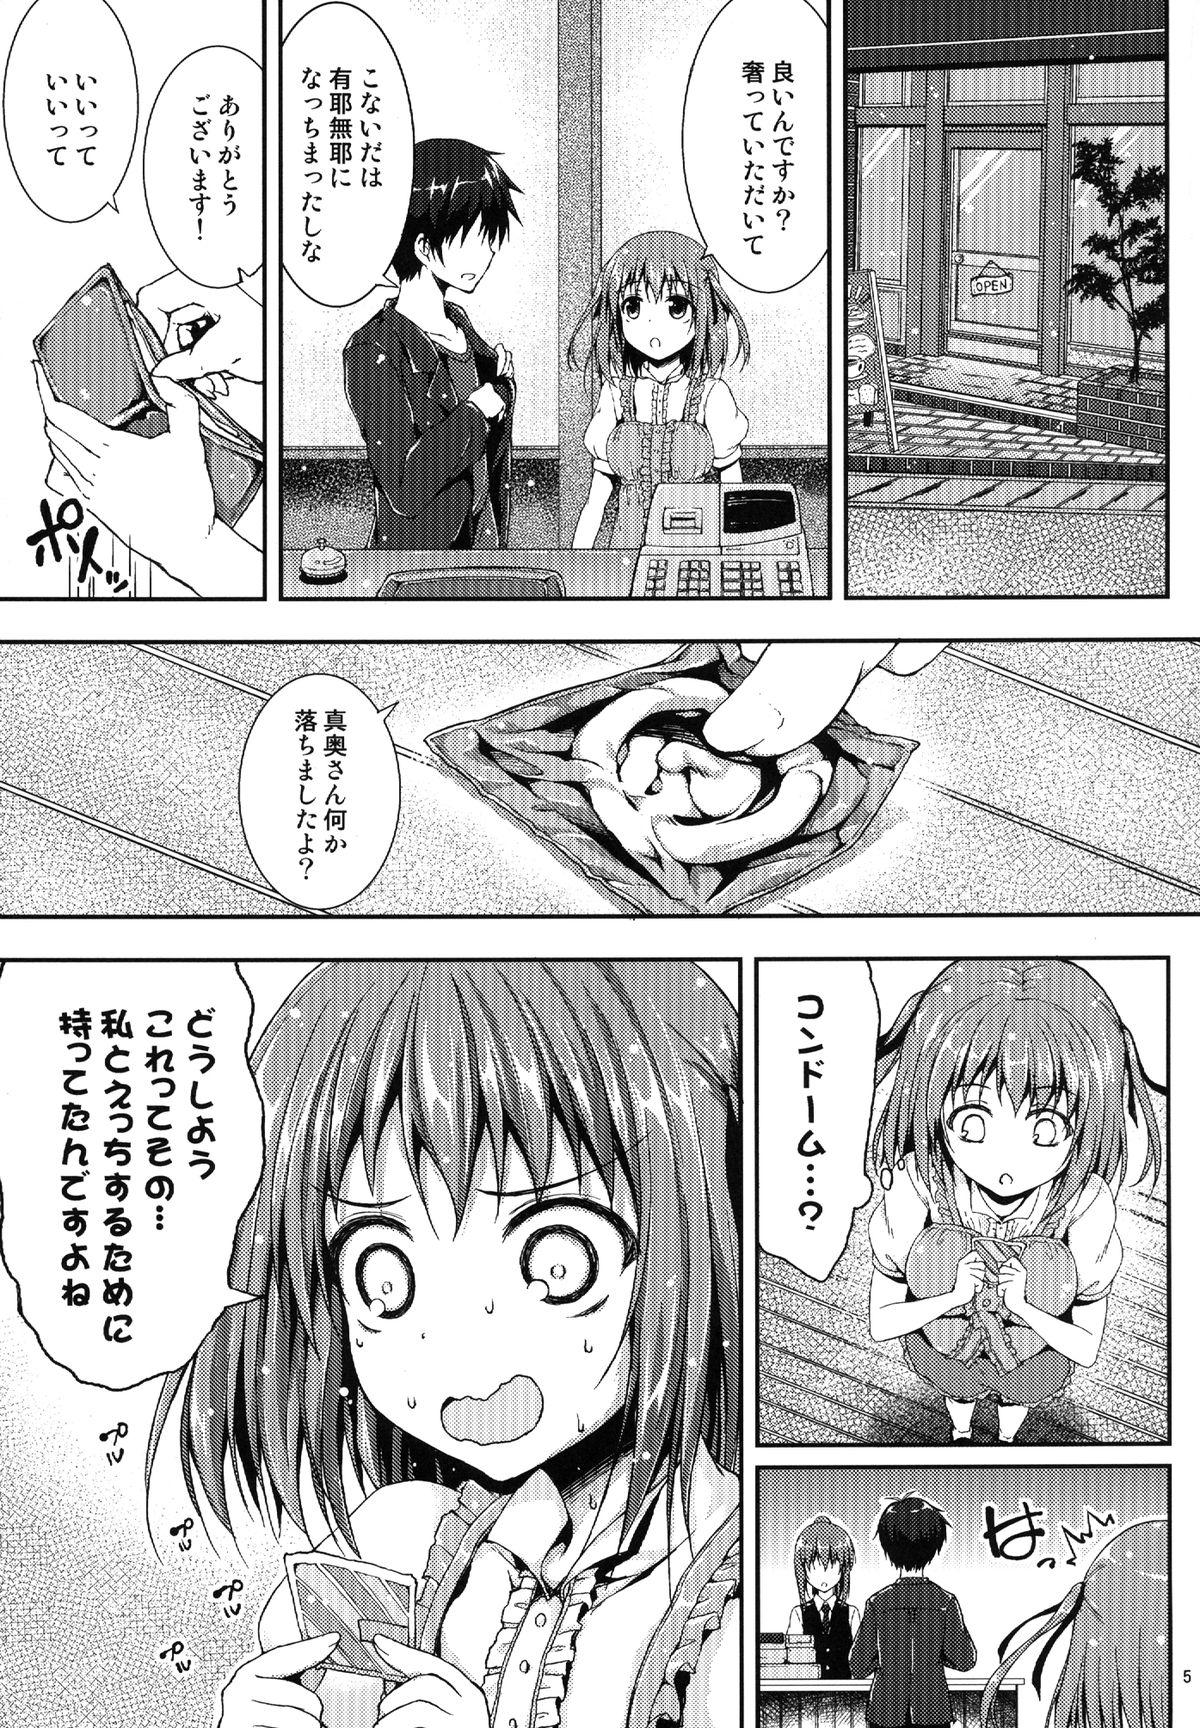 Eng Sub Koisuru Chi-chan! - Hataraku maou sama Master - Page 4